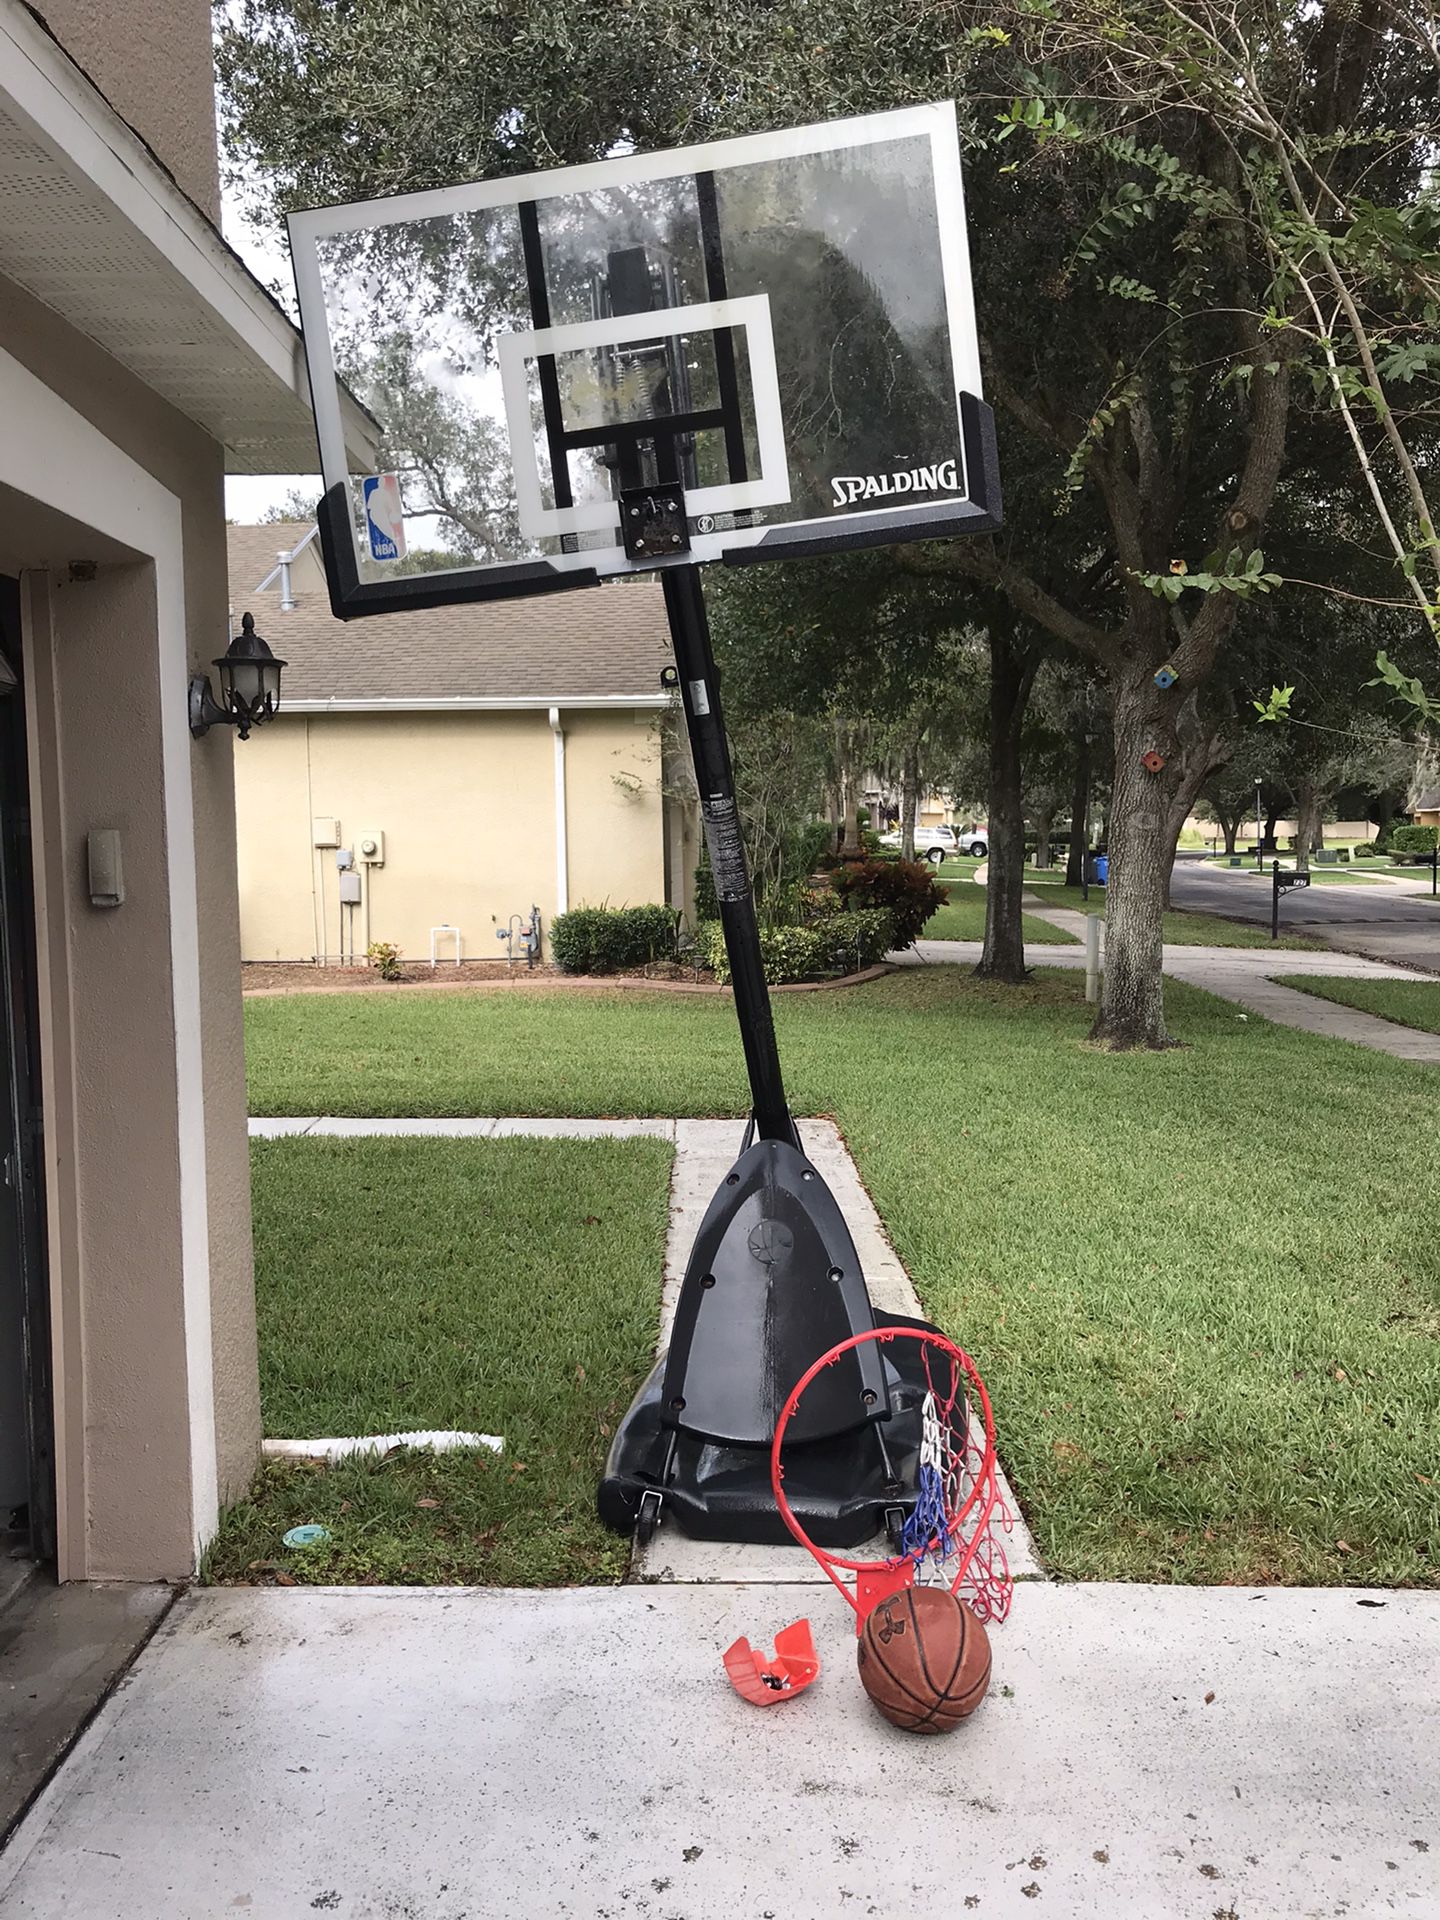 10 ft Basketball hoop wit a ball